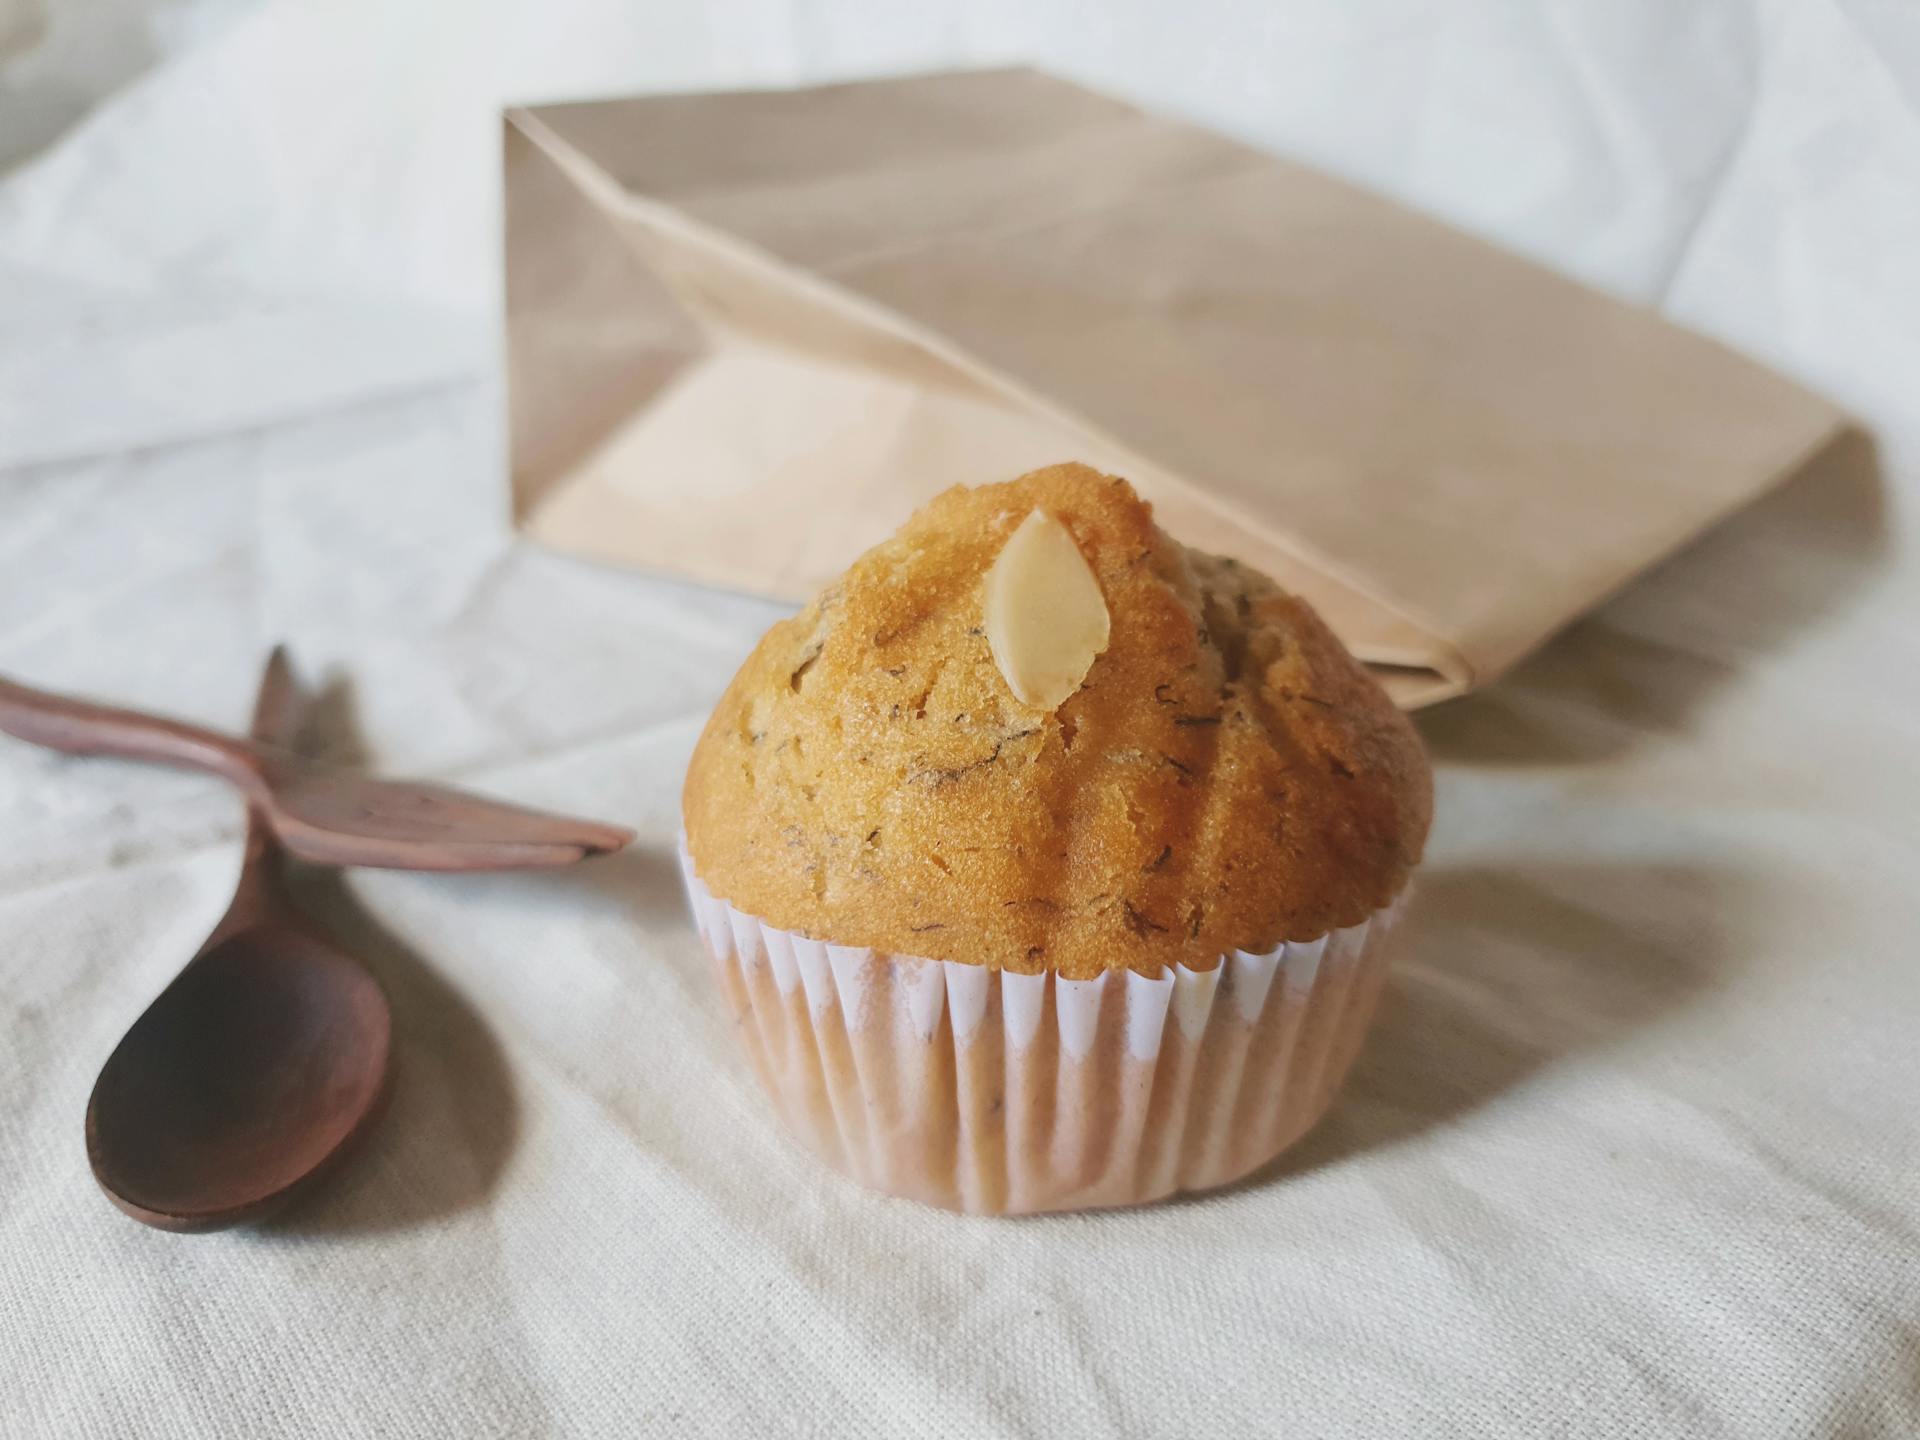 Un muffin et un sac en papier brun | Source : Pexels